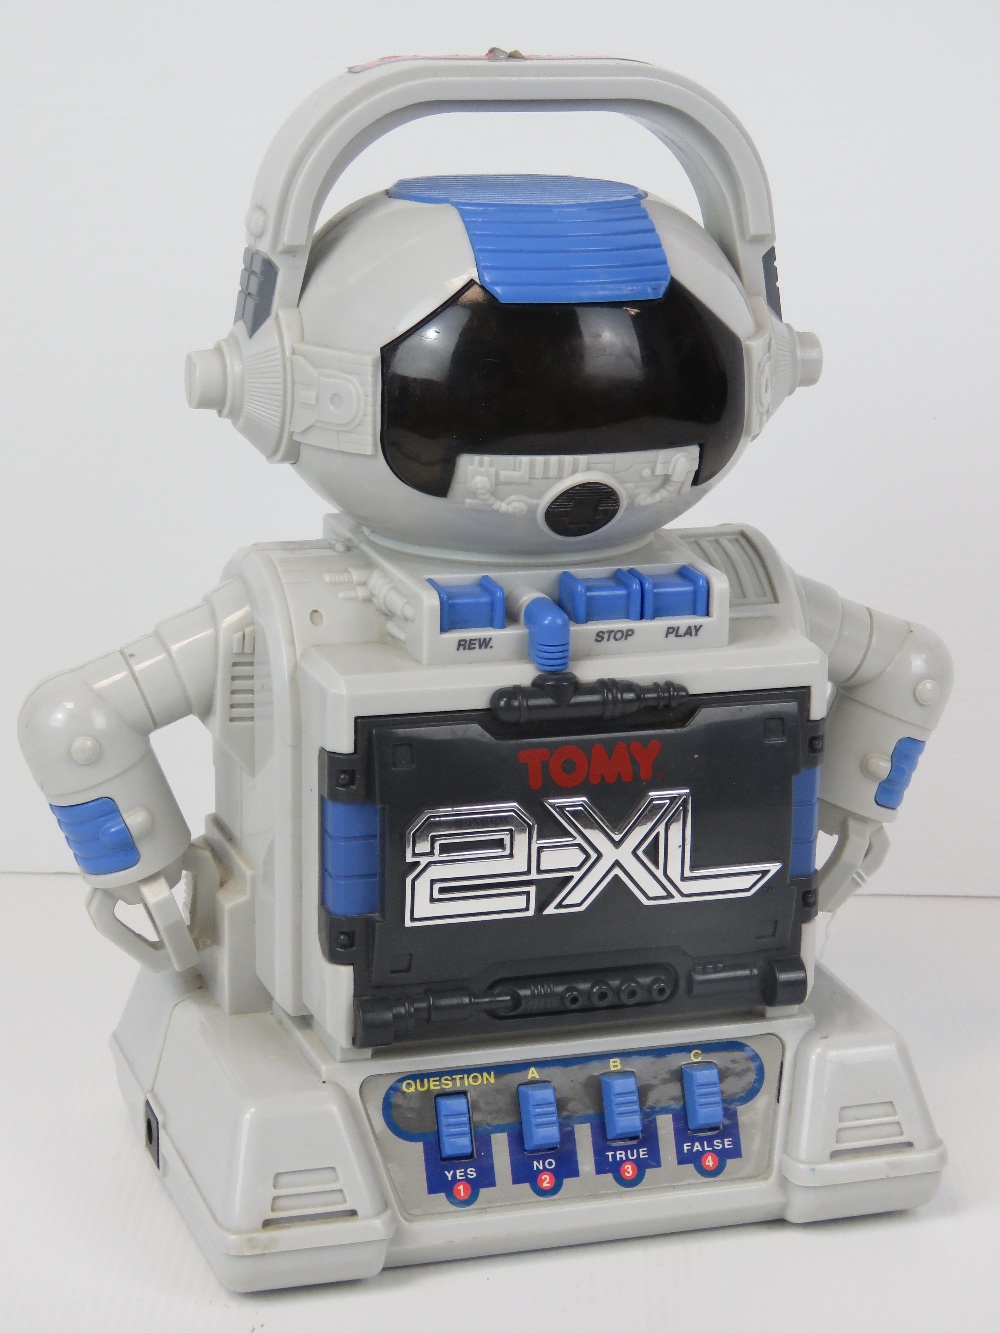 A Toby 2XL educational robot by Tiger El